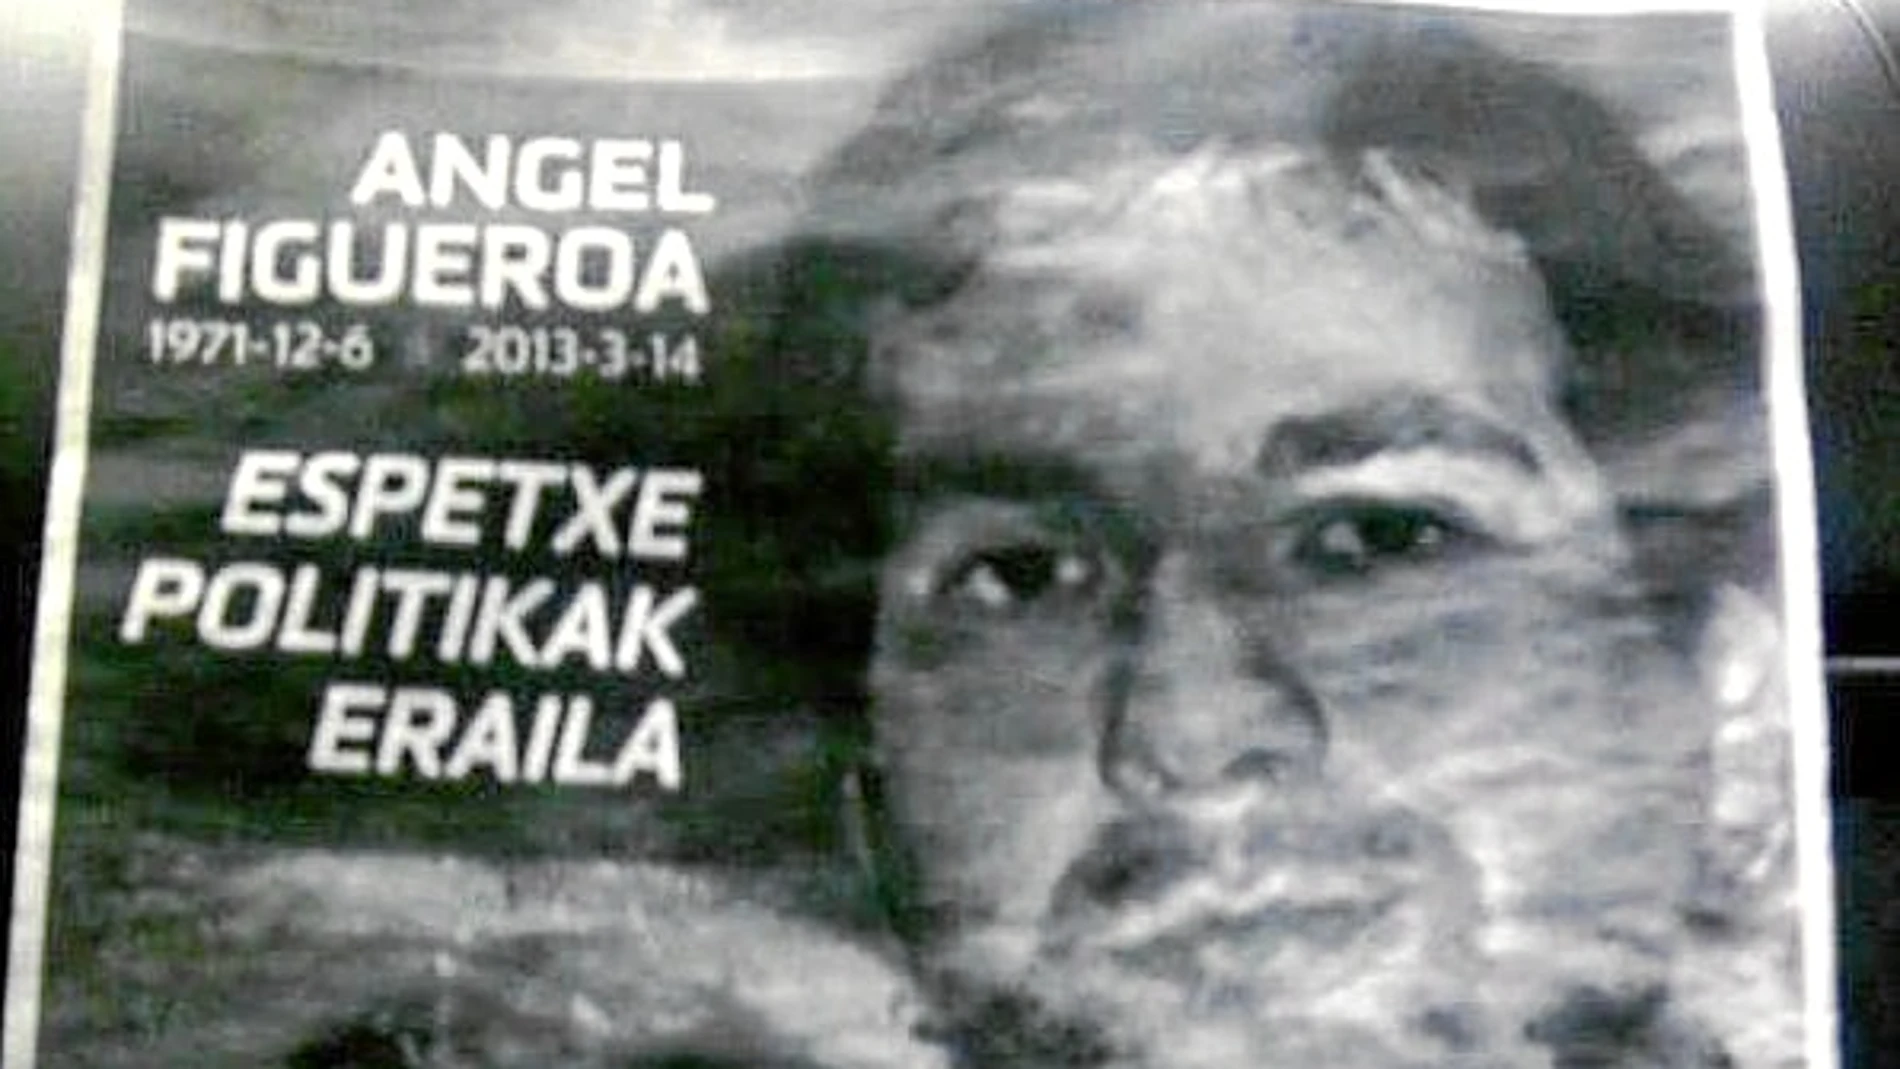 Reproducción del cartel de homenaje al etarra fallecido, Ángel Figueroa, con el que se ha inundado la localidad navarra de Lesaka